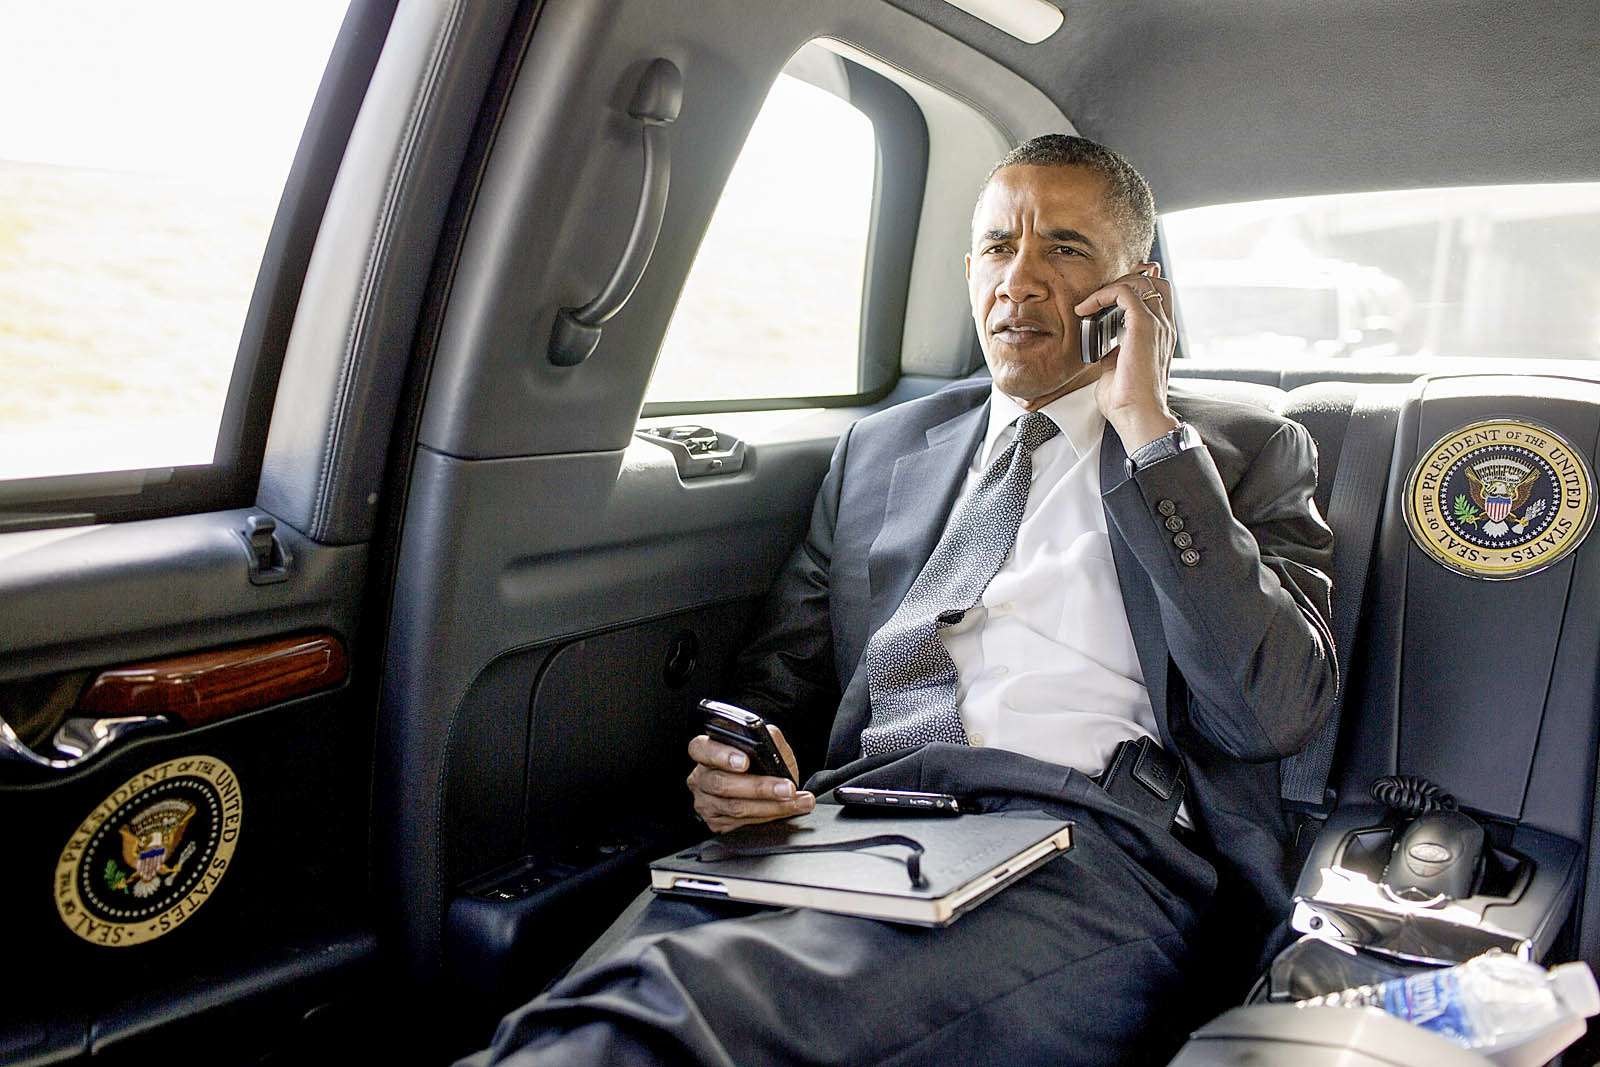 Разумеется, президентский лимузин оснащен всевозможными средствами связи. А ремни безопасности обычно висят без дела.